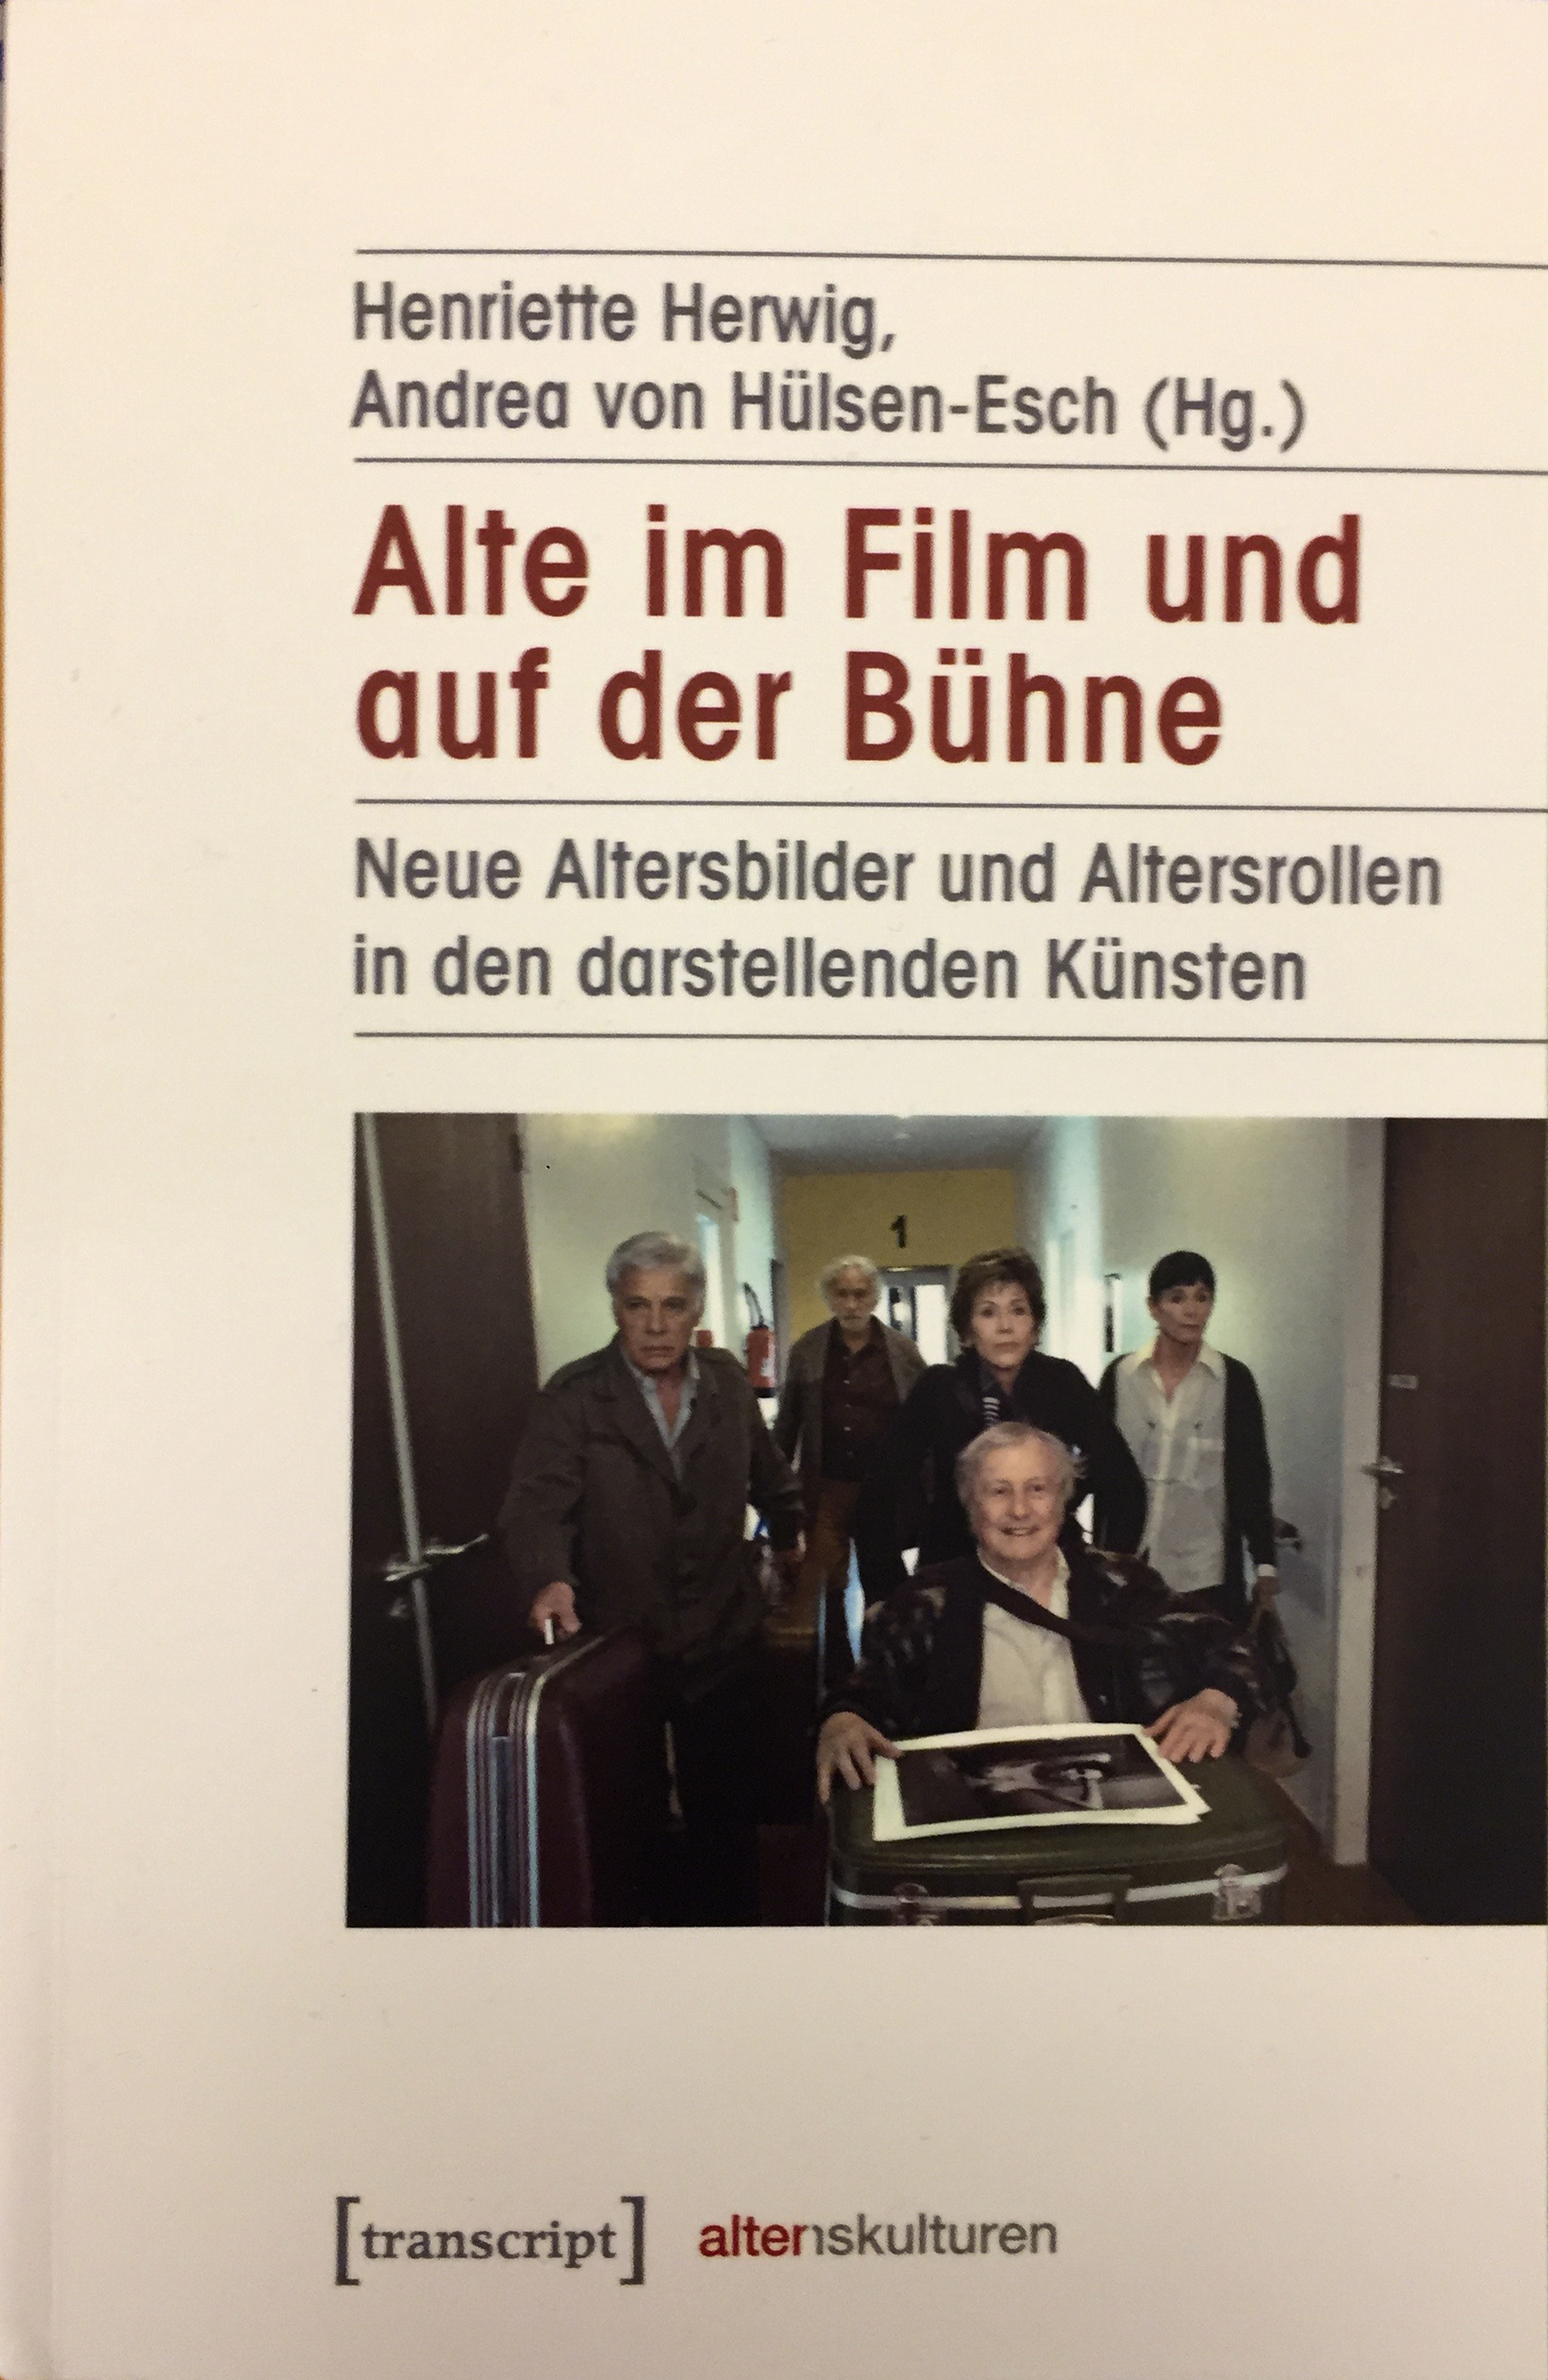 Herwig/Hülsen-Esch: Alte im Film und auf der Bühne